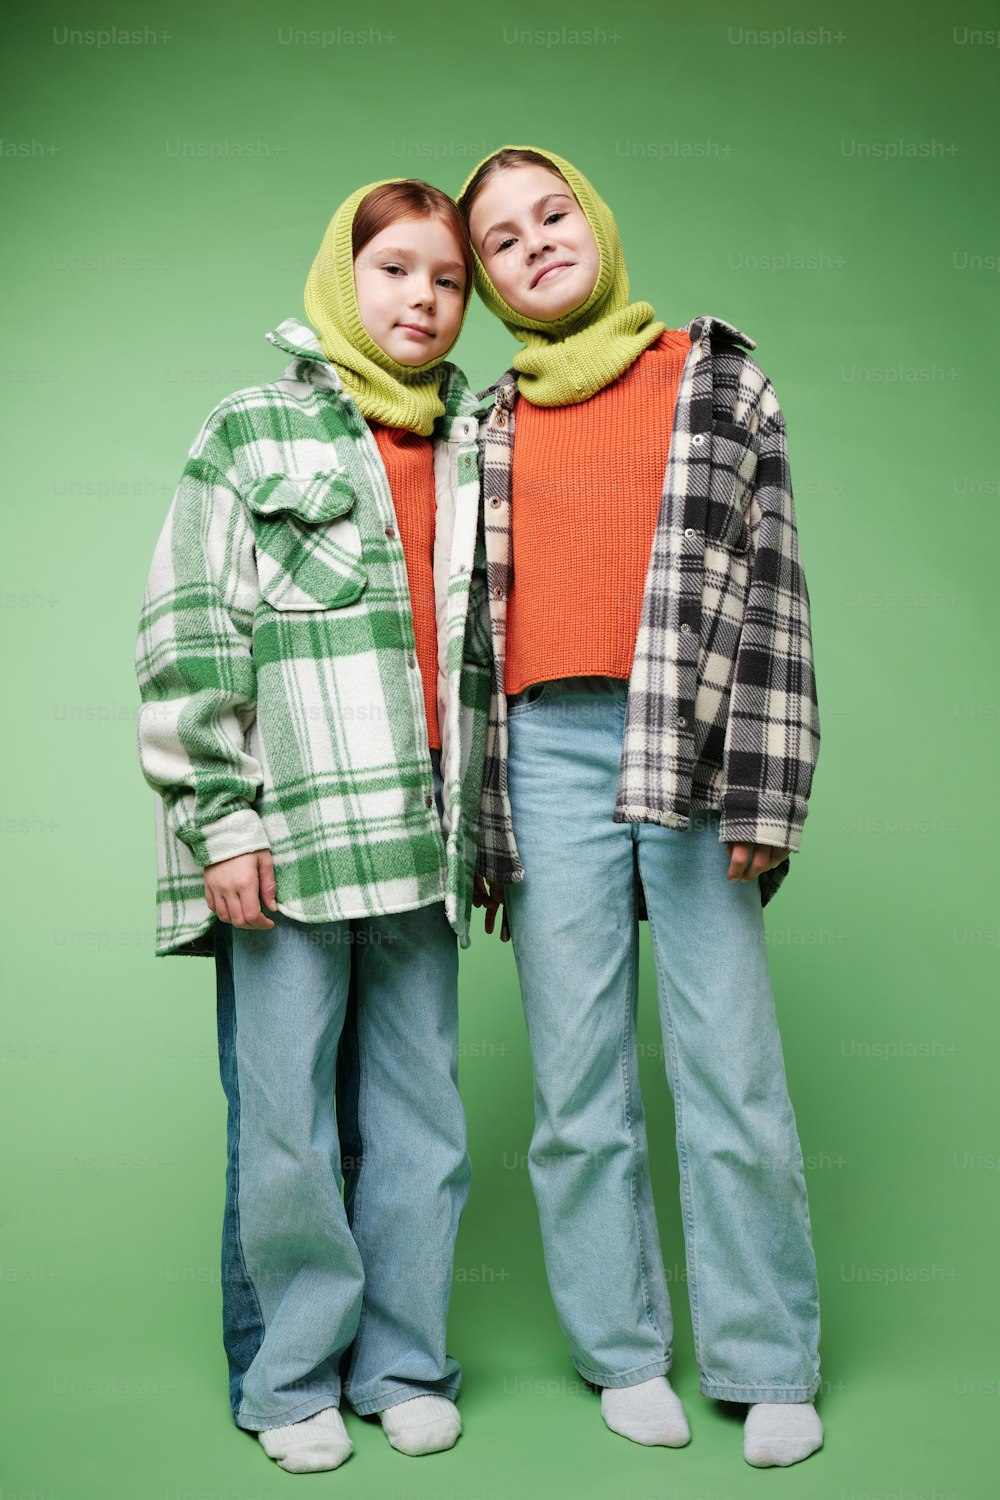 deux personnes debout l’une à côté de l’autre devant un fond vert